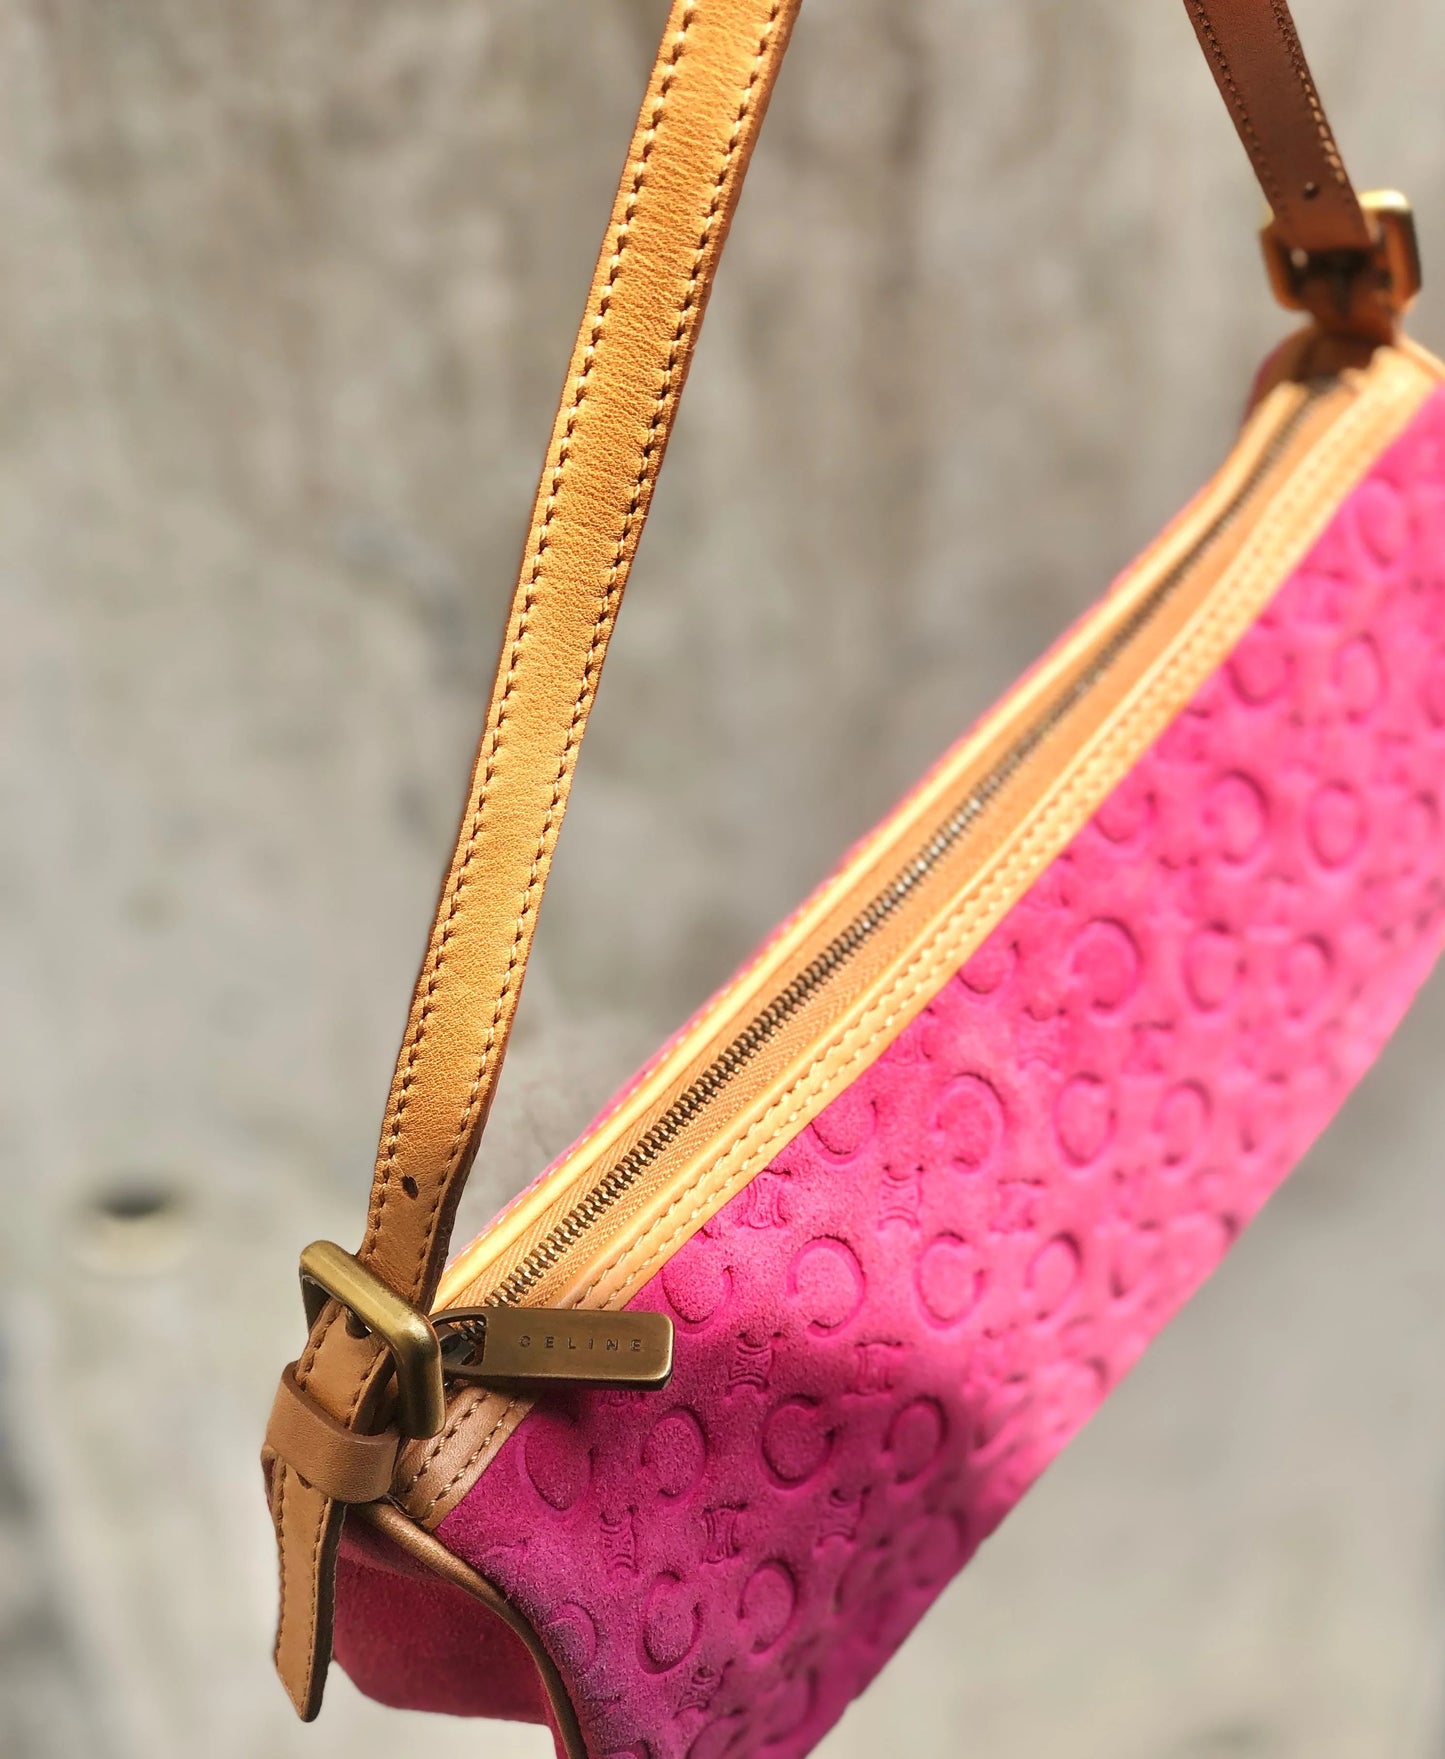 CELINE C Macadam Suede Leather Accessory Pouch Hobo Mini Bag Shoulder Bag Pink Camel vintage Old Celine ysm4yh